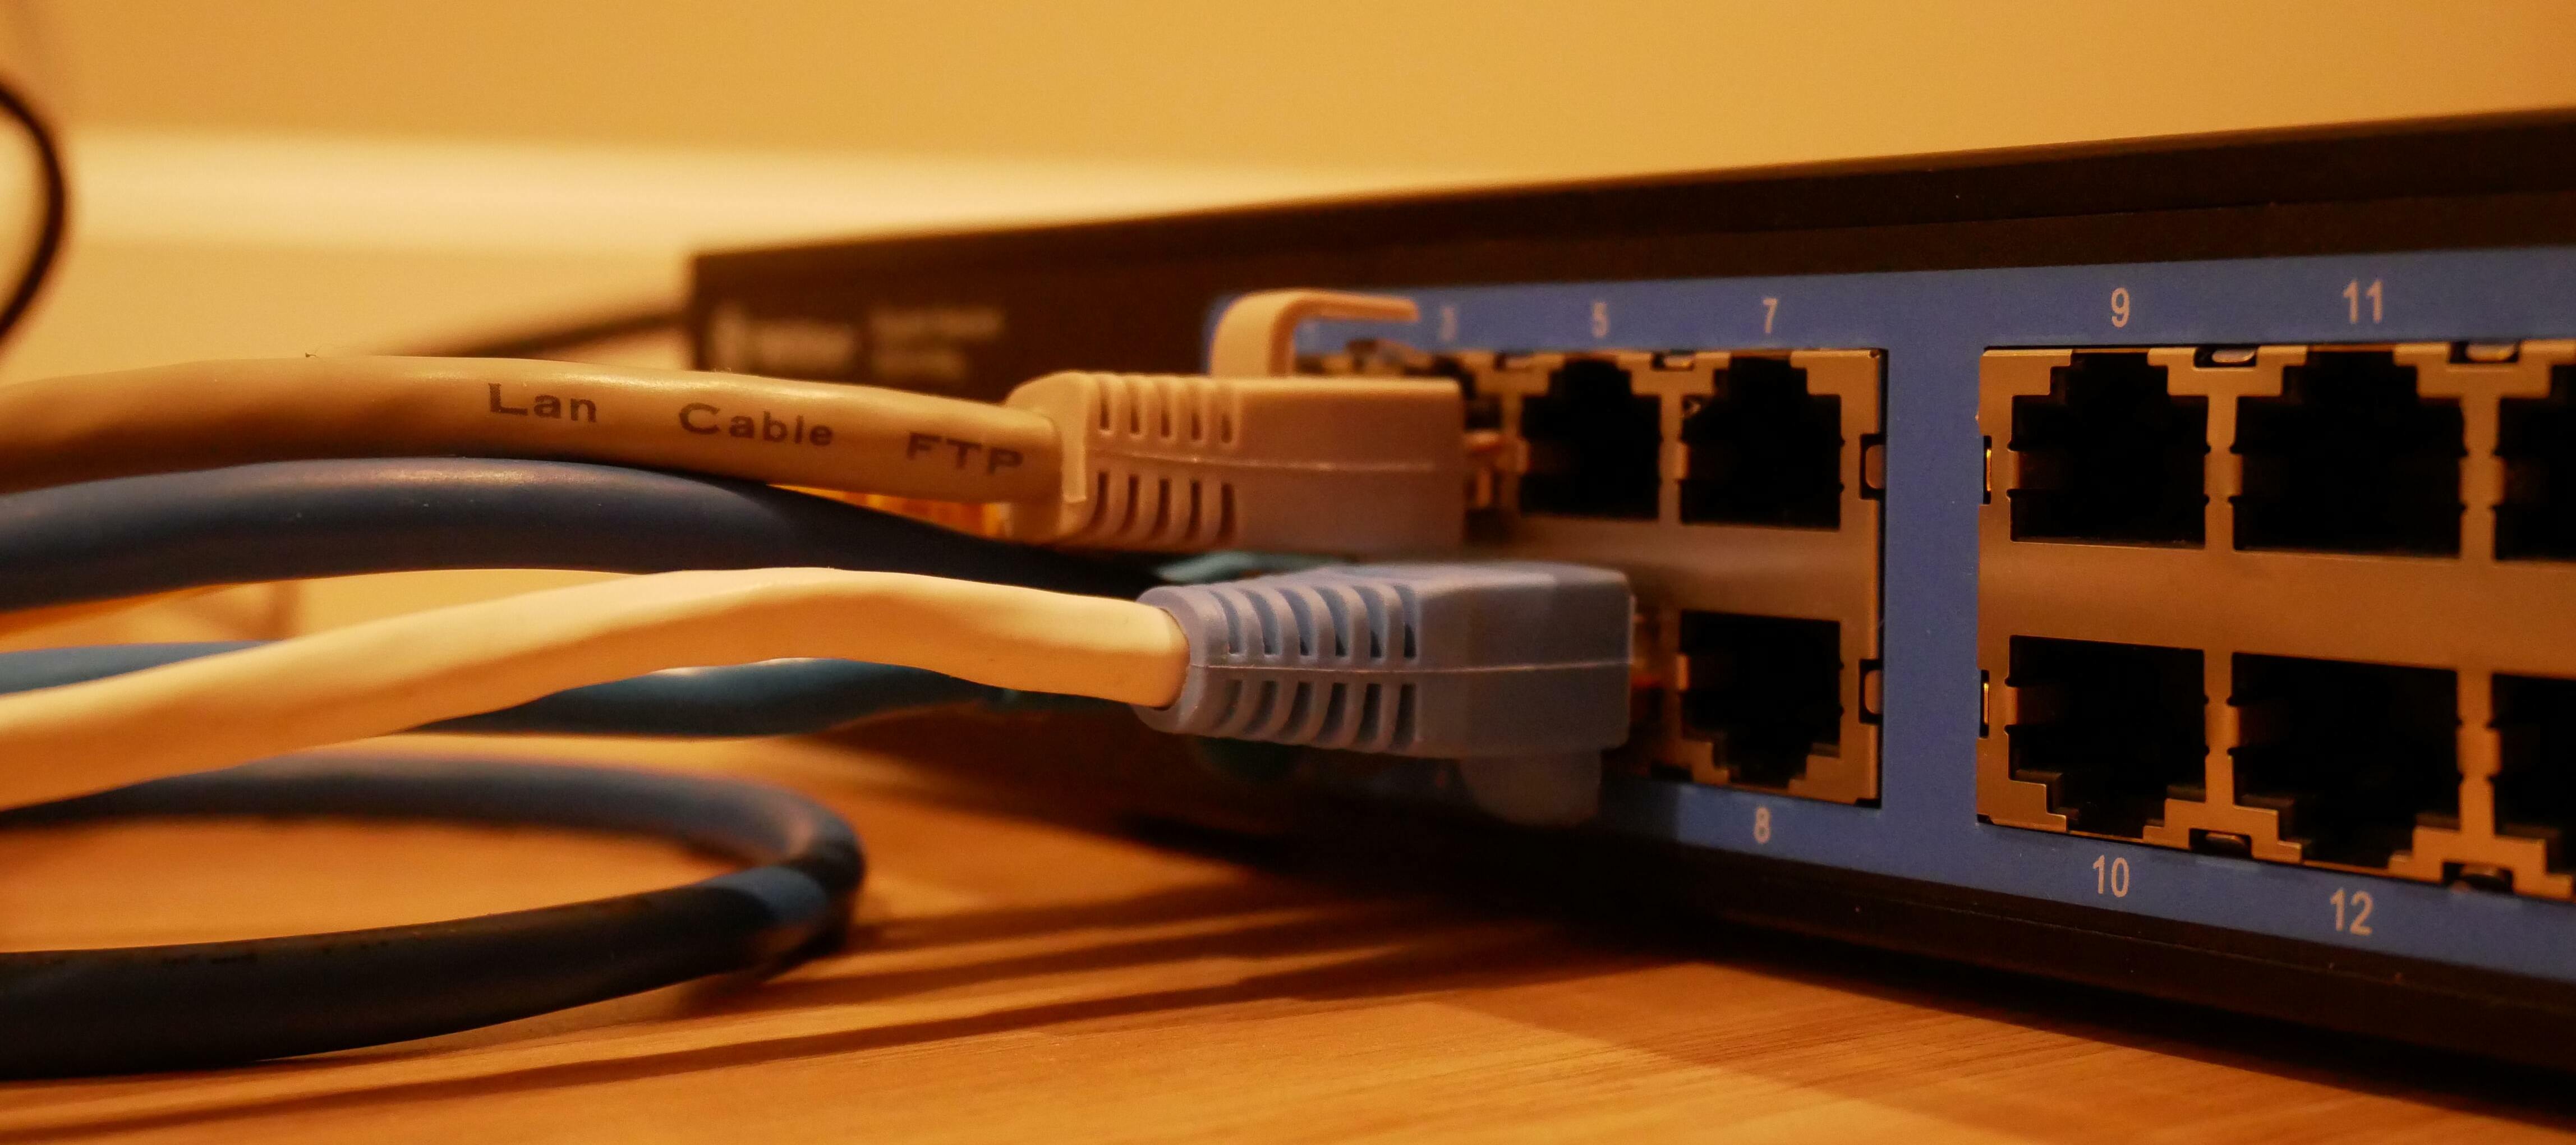 Was ist euch das Wichtigste bei der Auswahl eures Routers?